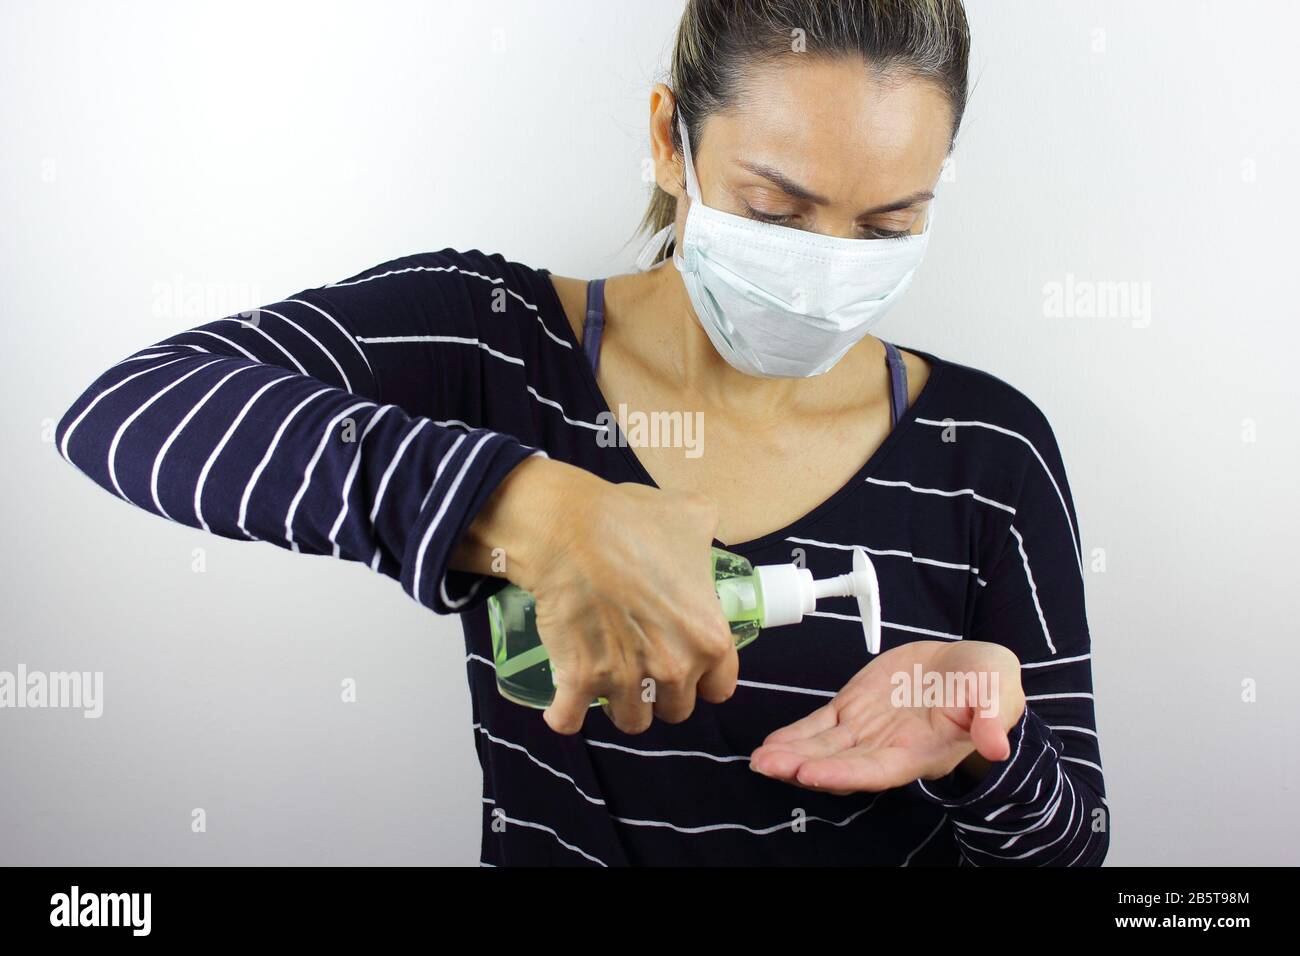 Femme d'Amérique latine portant un masque antivirus avec une bouteille de désinfectant pour les mains Banque D'Images